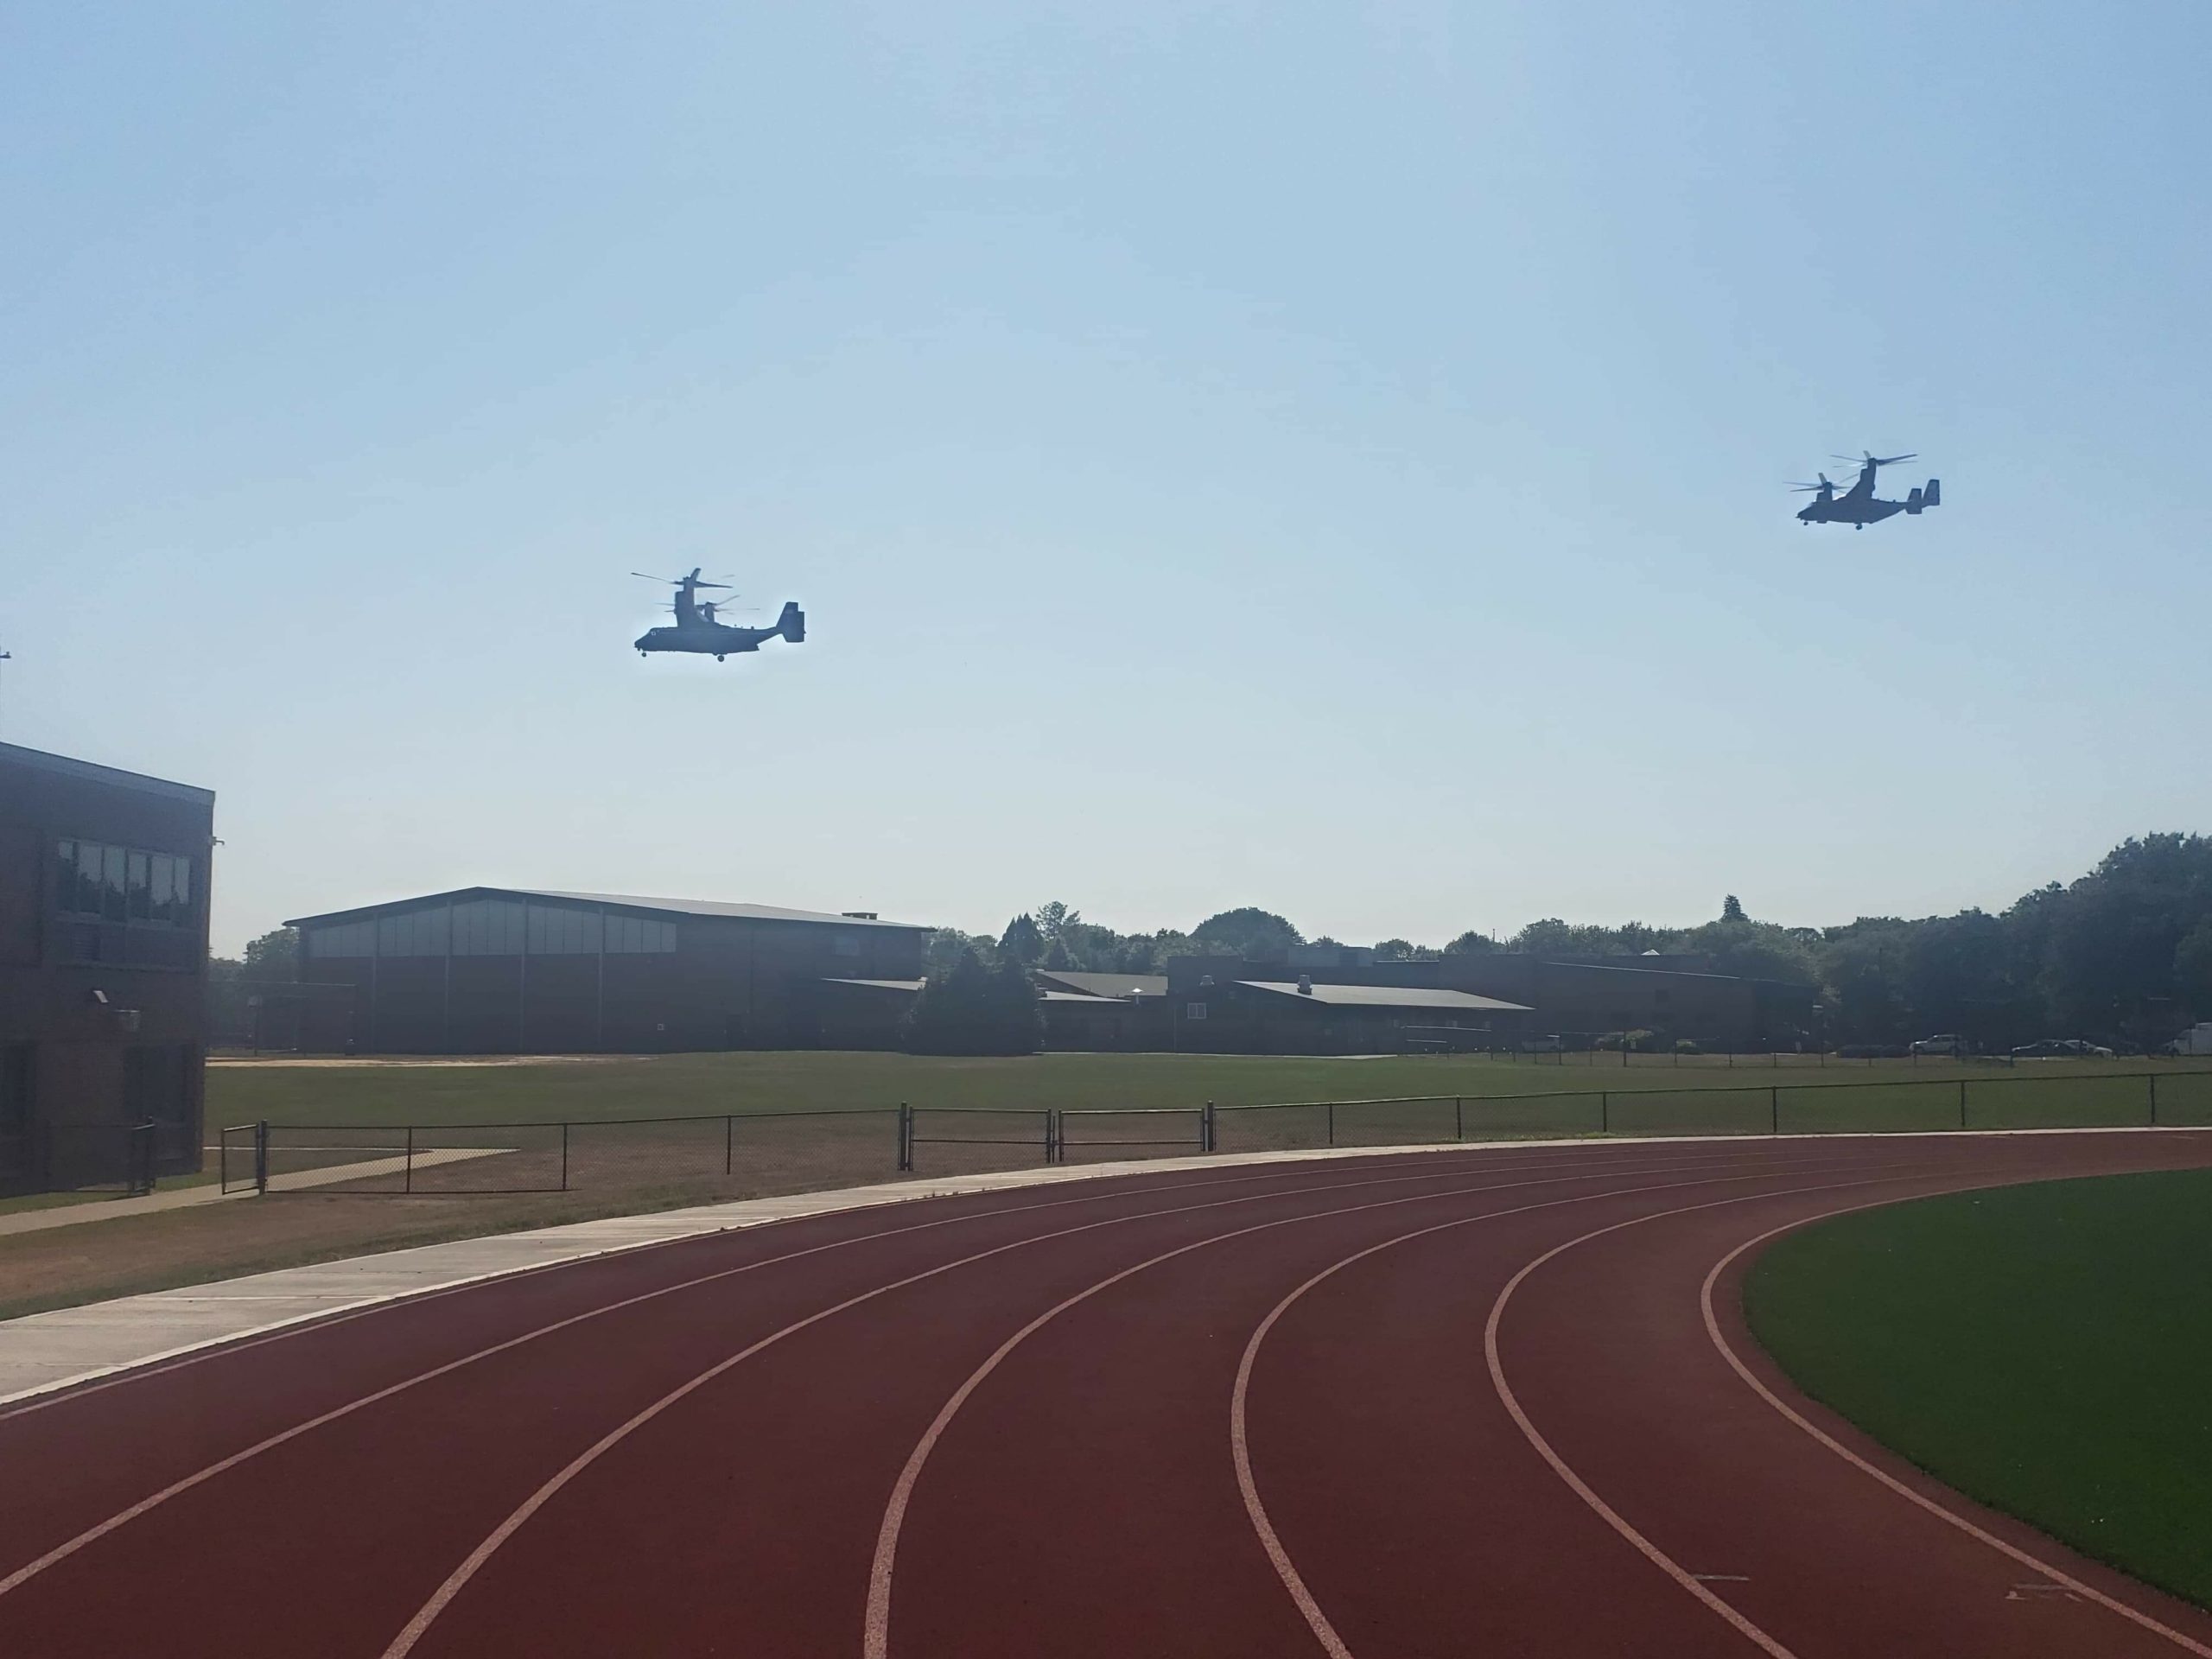 The V-22 Ospreys approach the high school. 